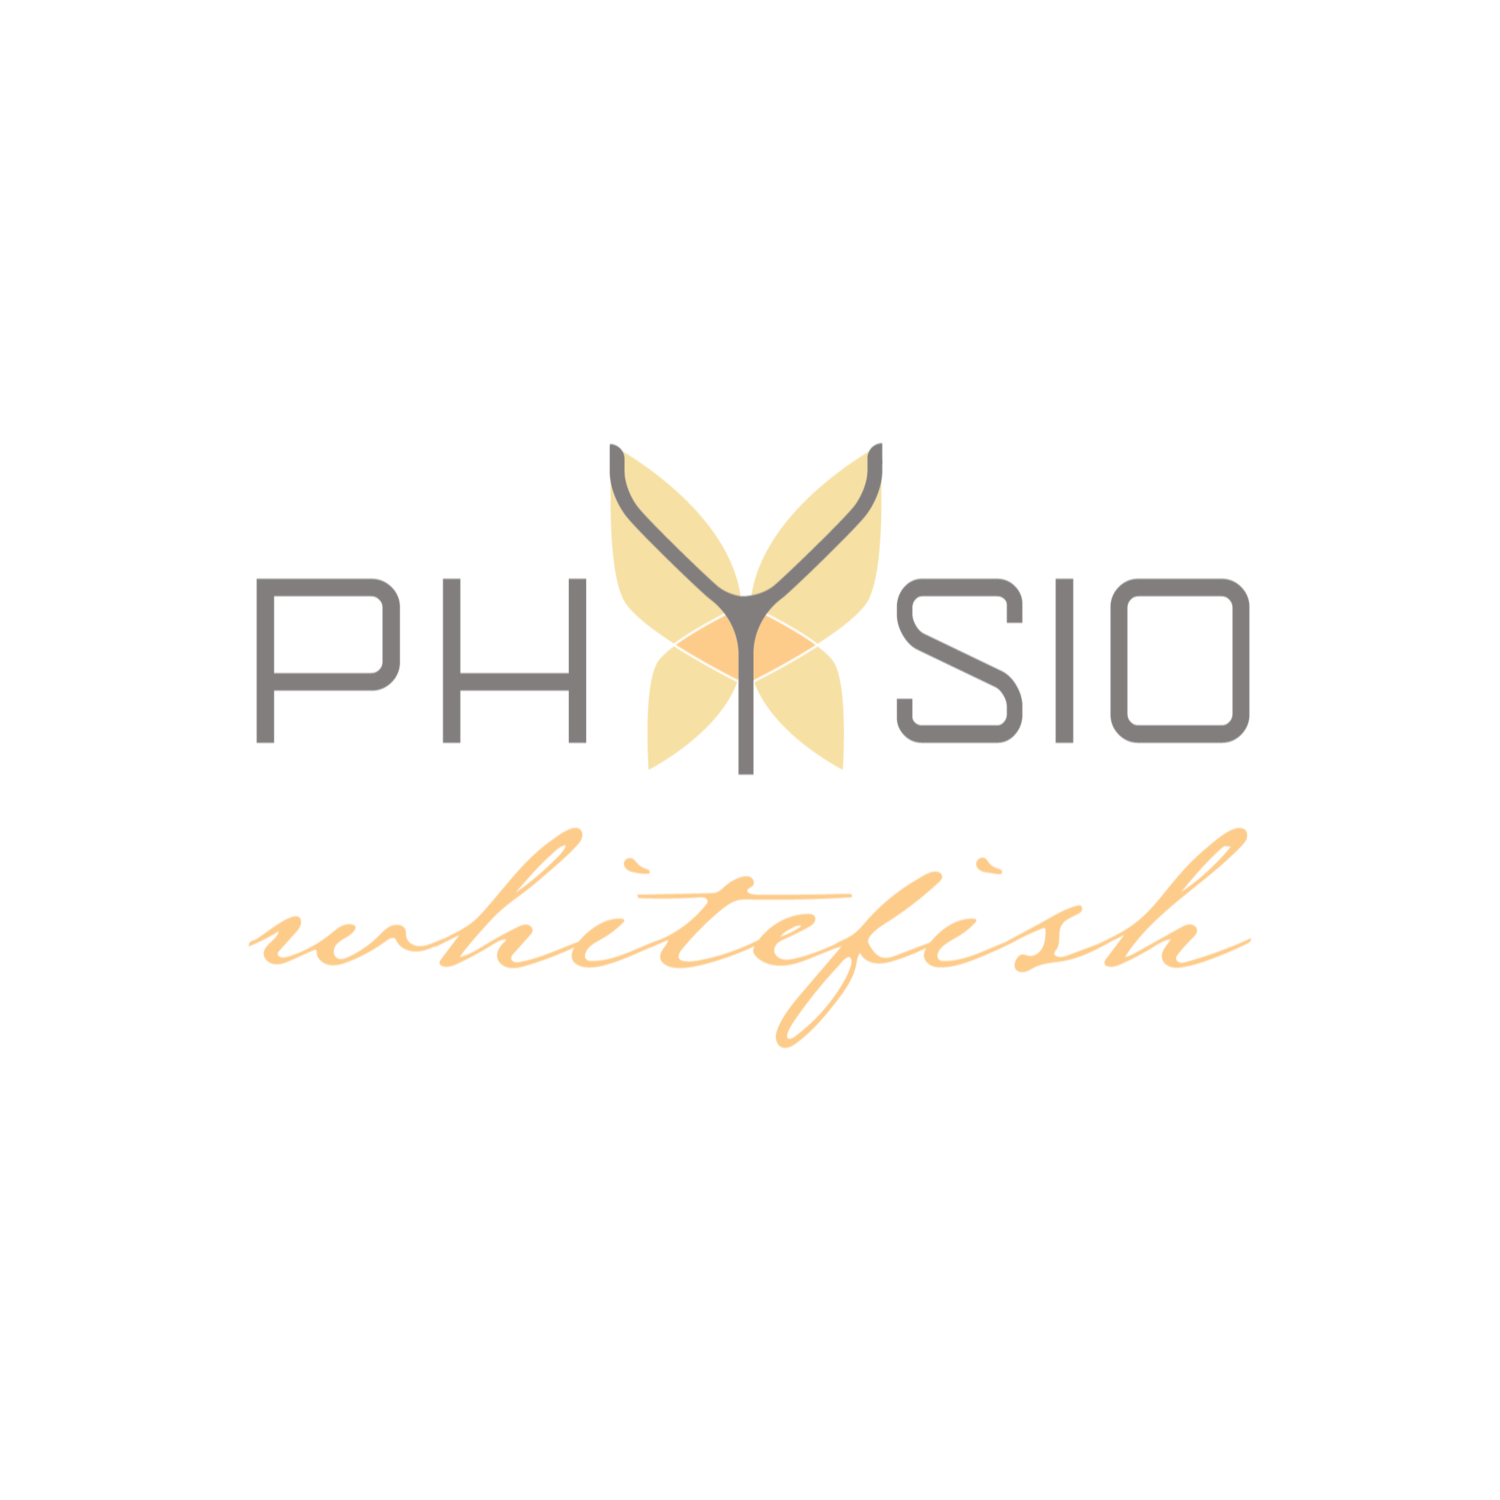 Physio Whitefish - Whitefish, MT 59937 - (406)730-2224 | ShowMeLocal.com